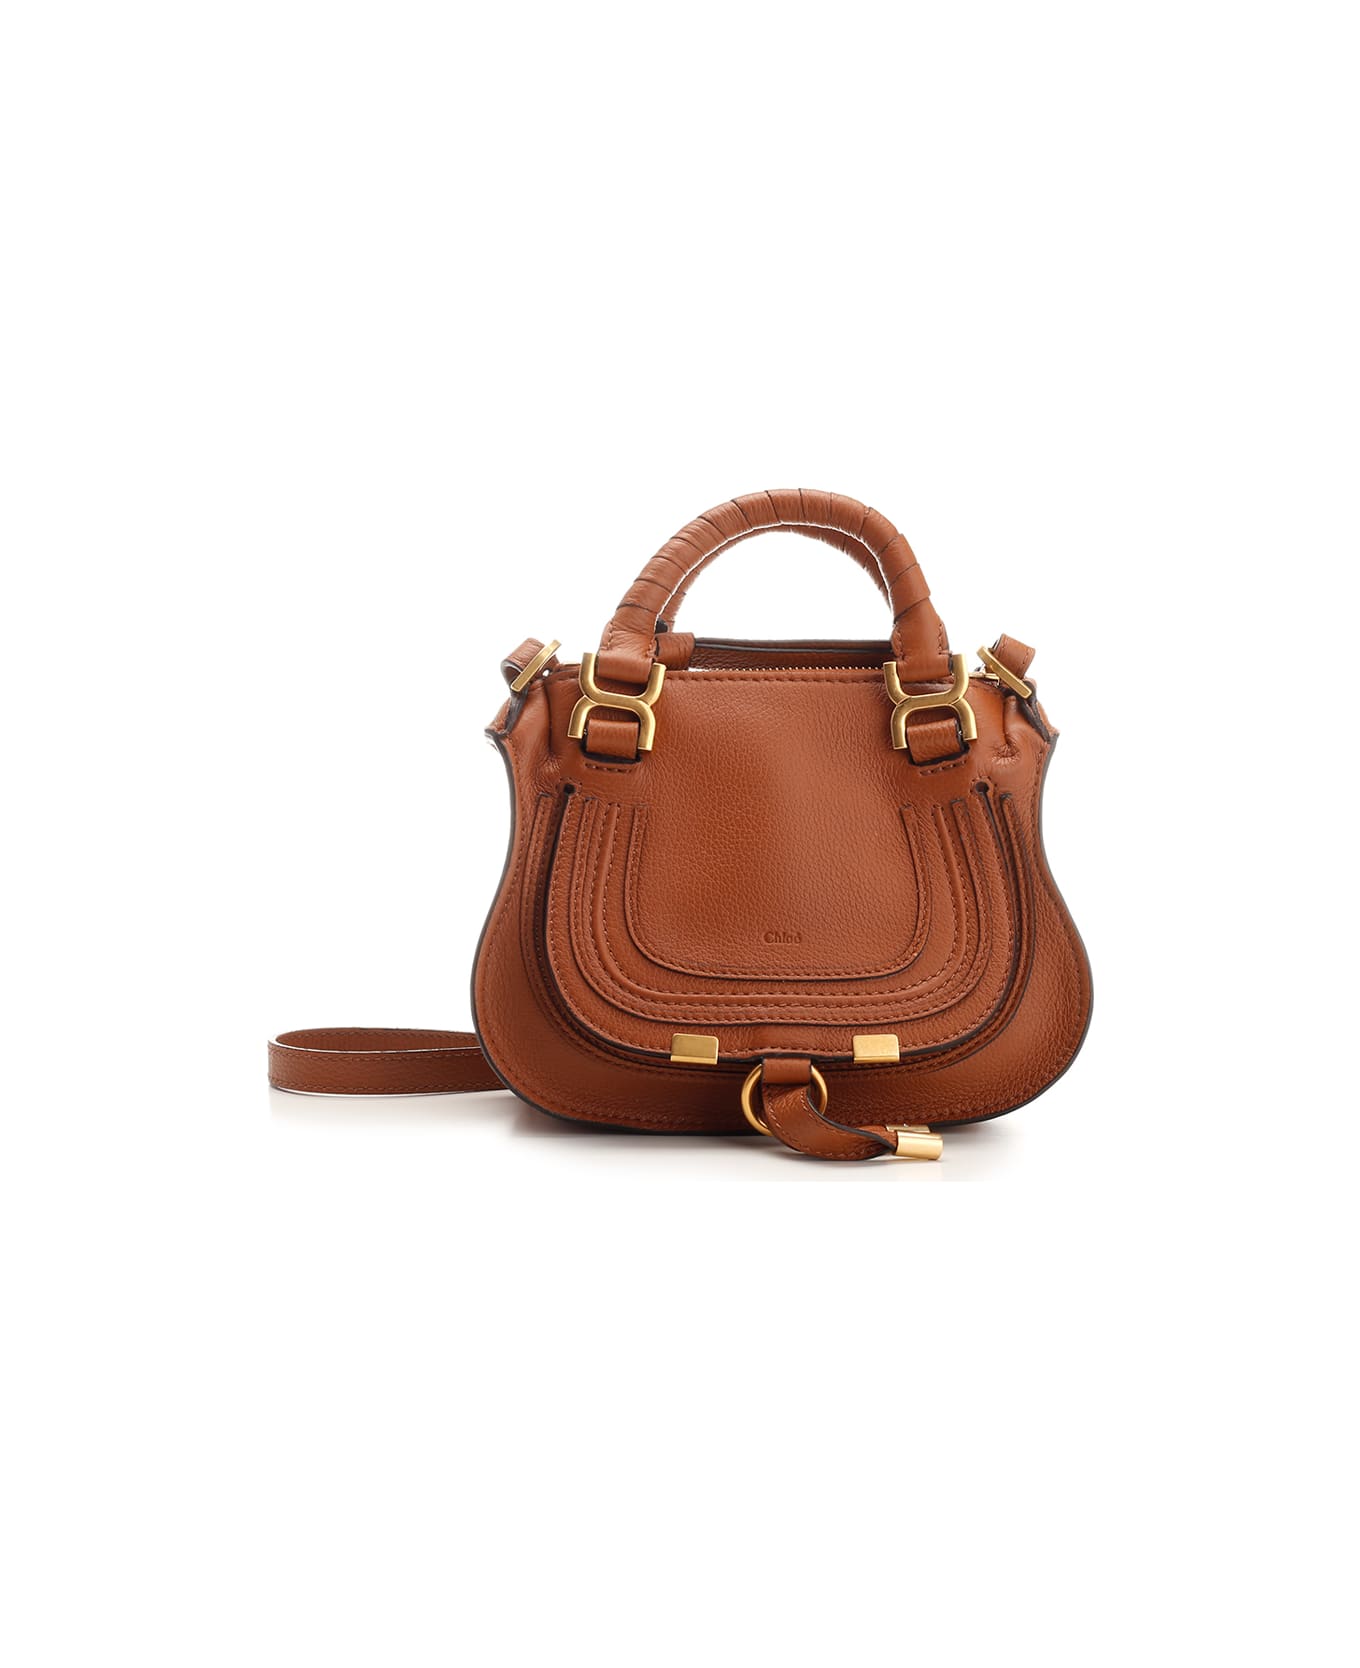 Chloé 'marcie' Handbag - Leather Brown